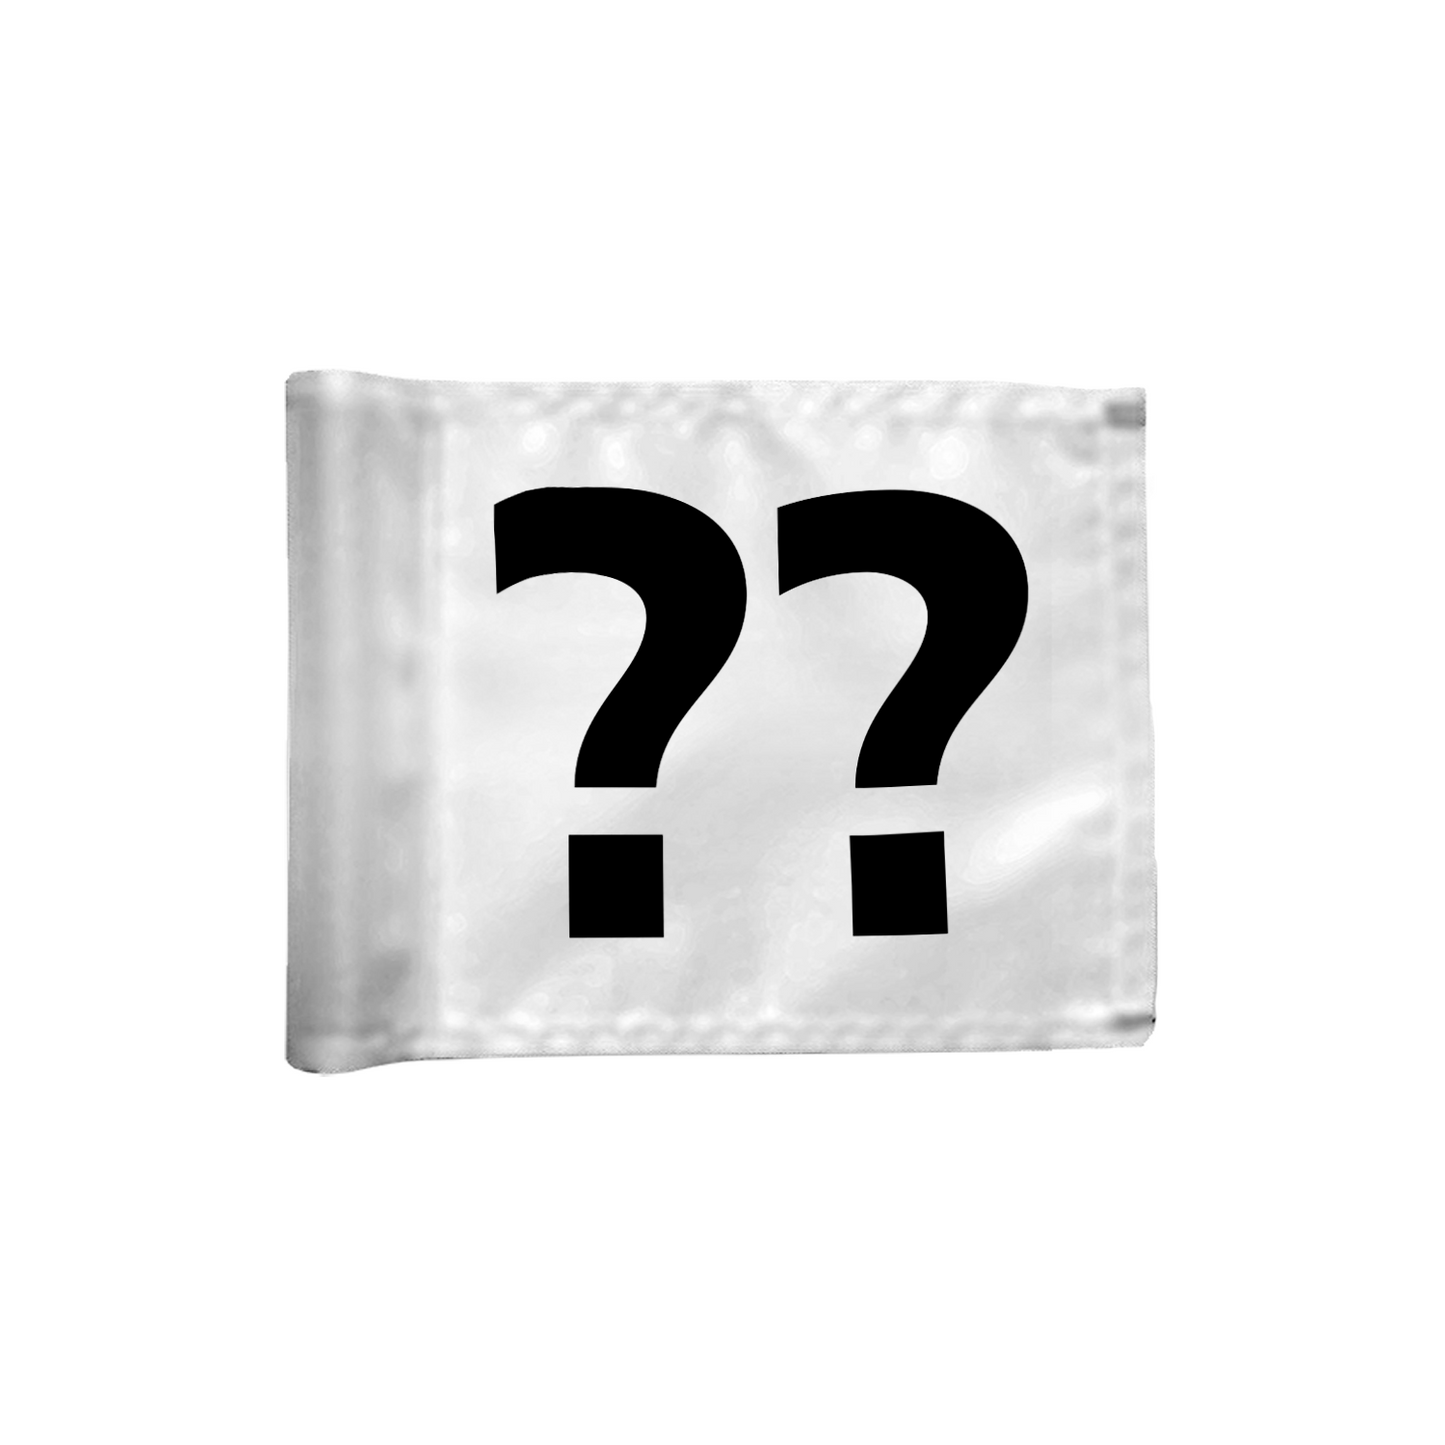 Stykvis puttinggreen flag enkeltsidet i hvid med valgfrit hulnummer, 200 gram flagdug